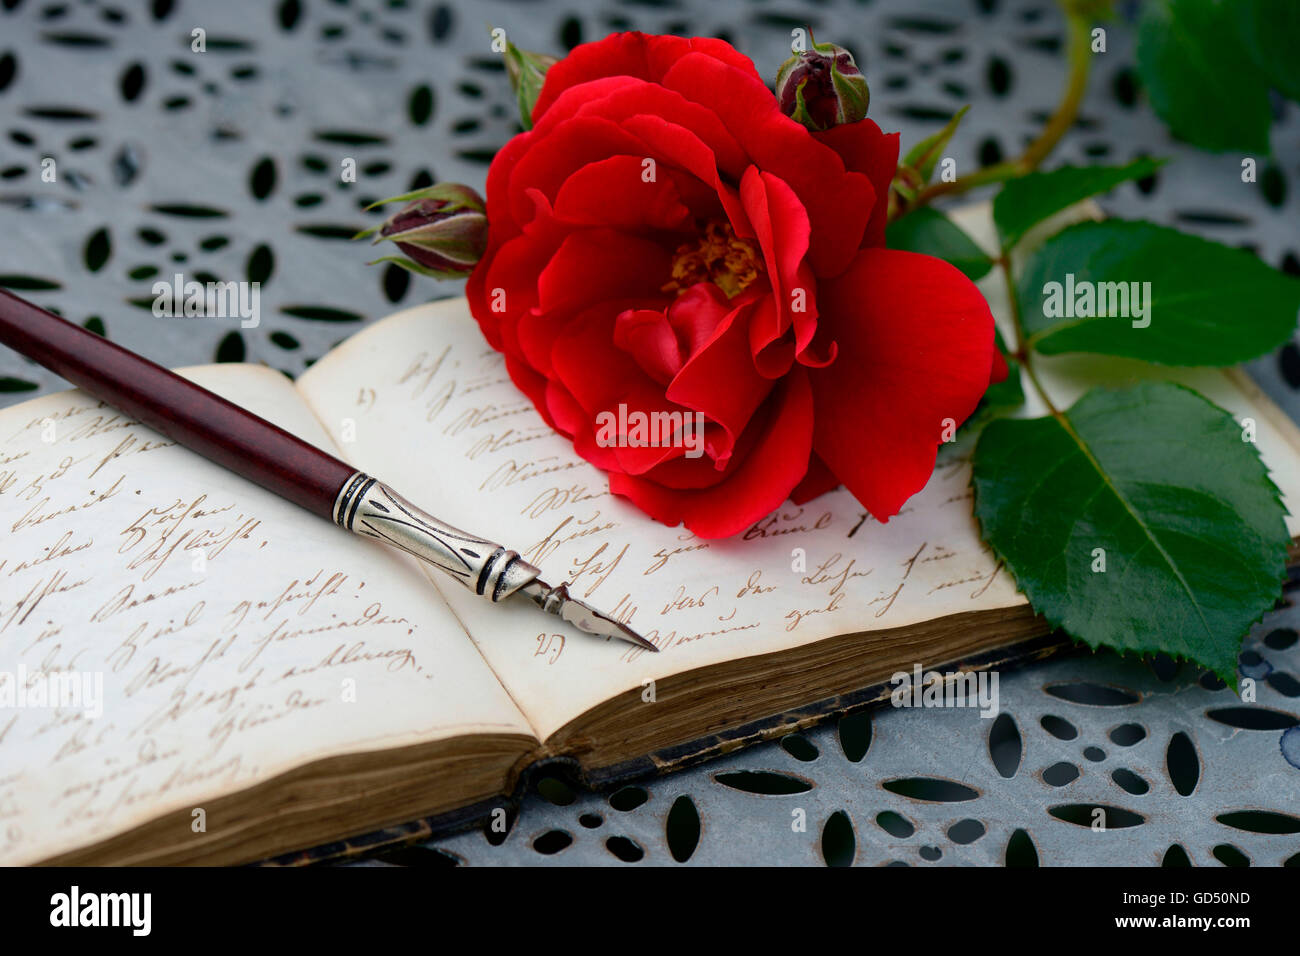 Federhalter auf Buch mit alter Schrift, rote Rose, Handschrift Banque D'Images